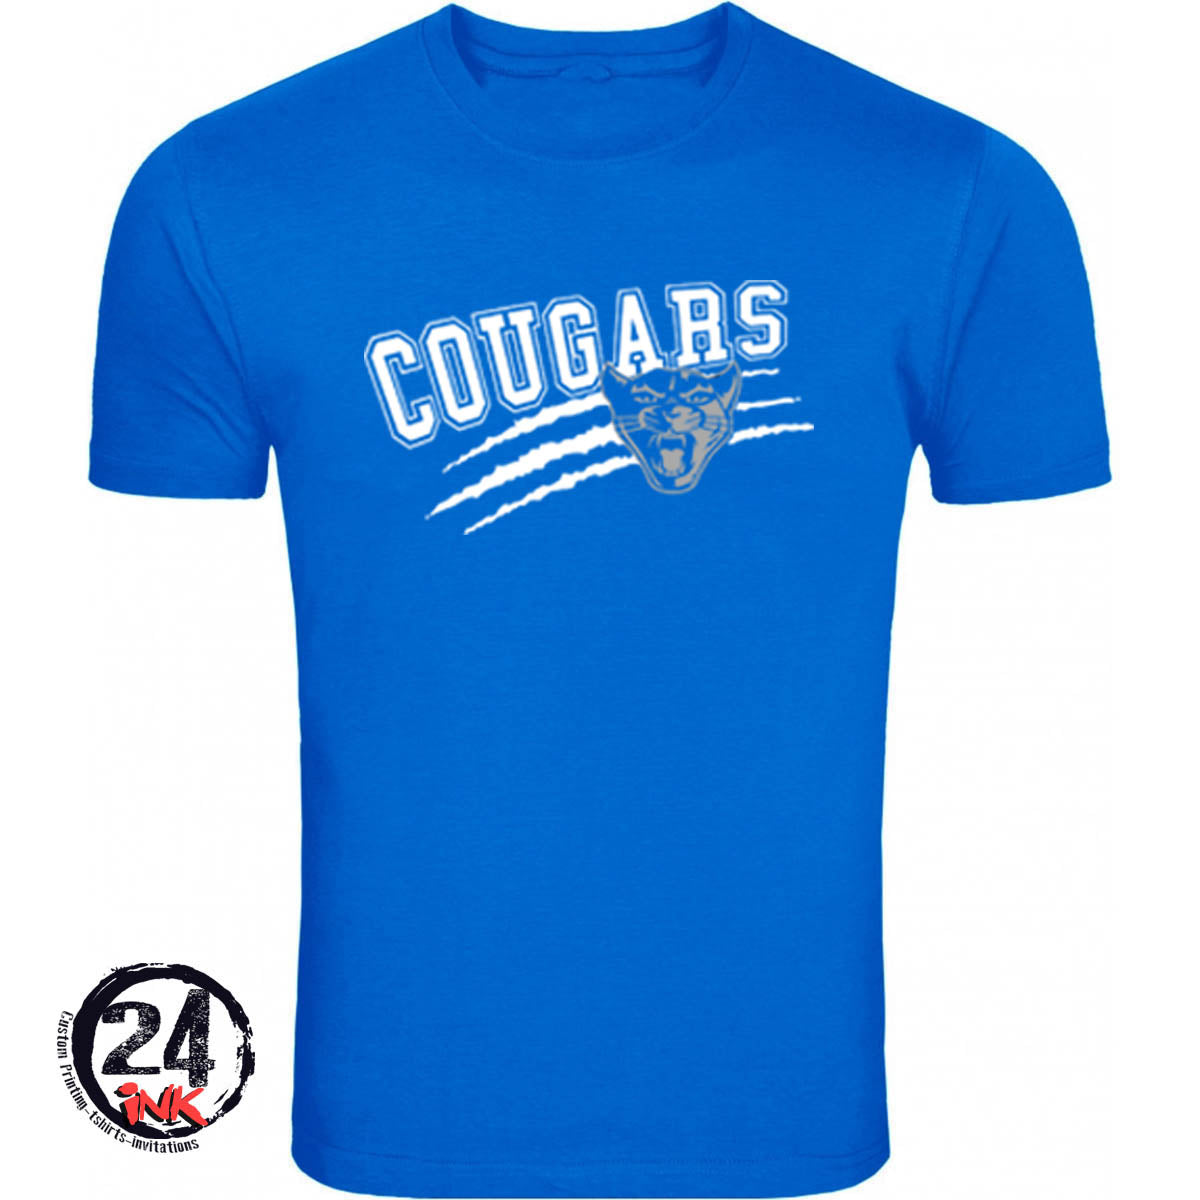 Cougars custom apparel